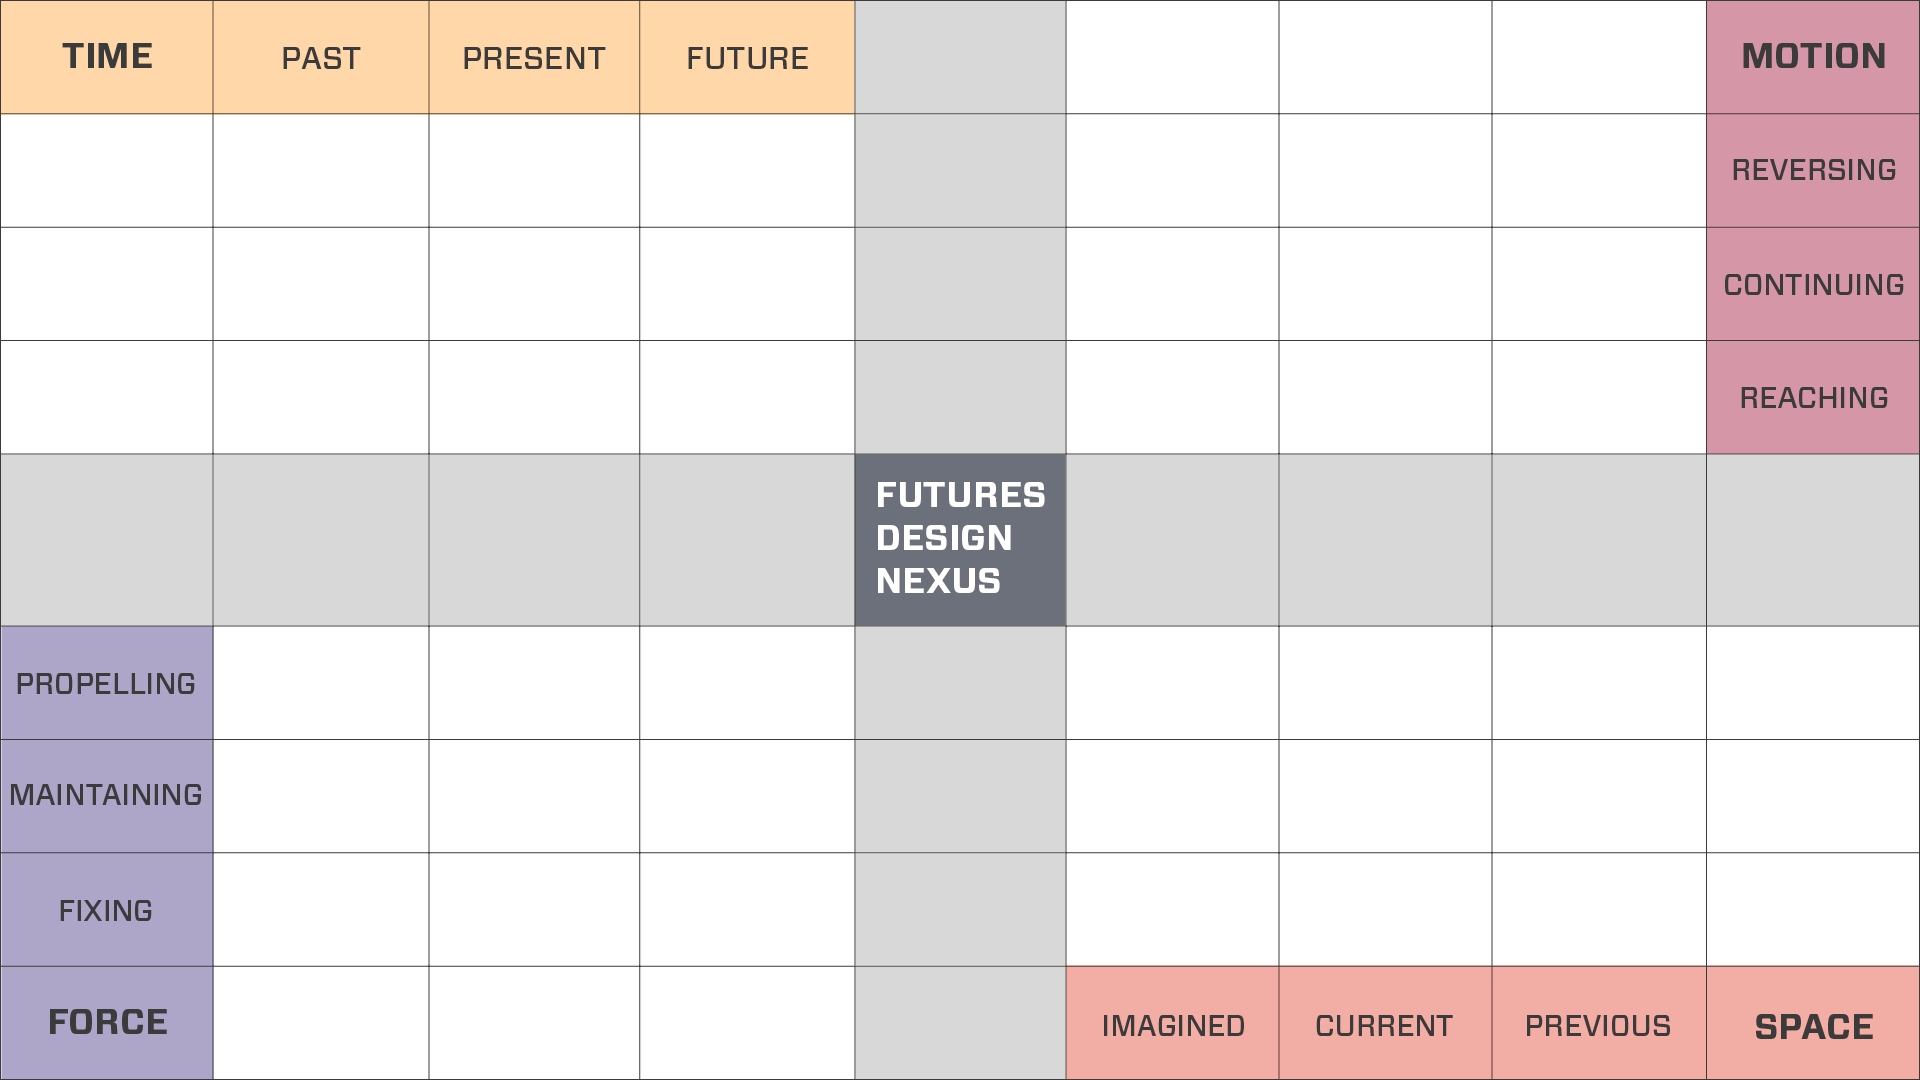 The Futures Design Nexus